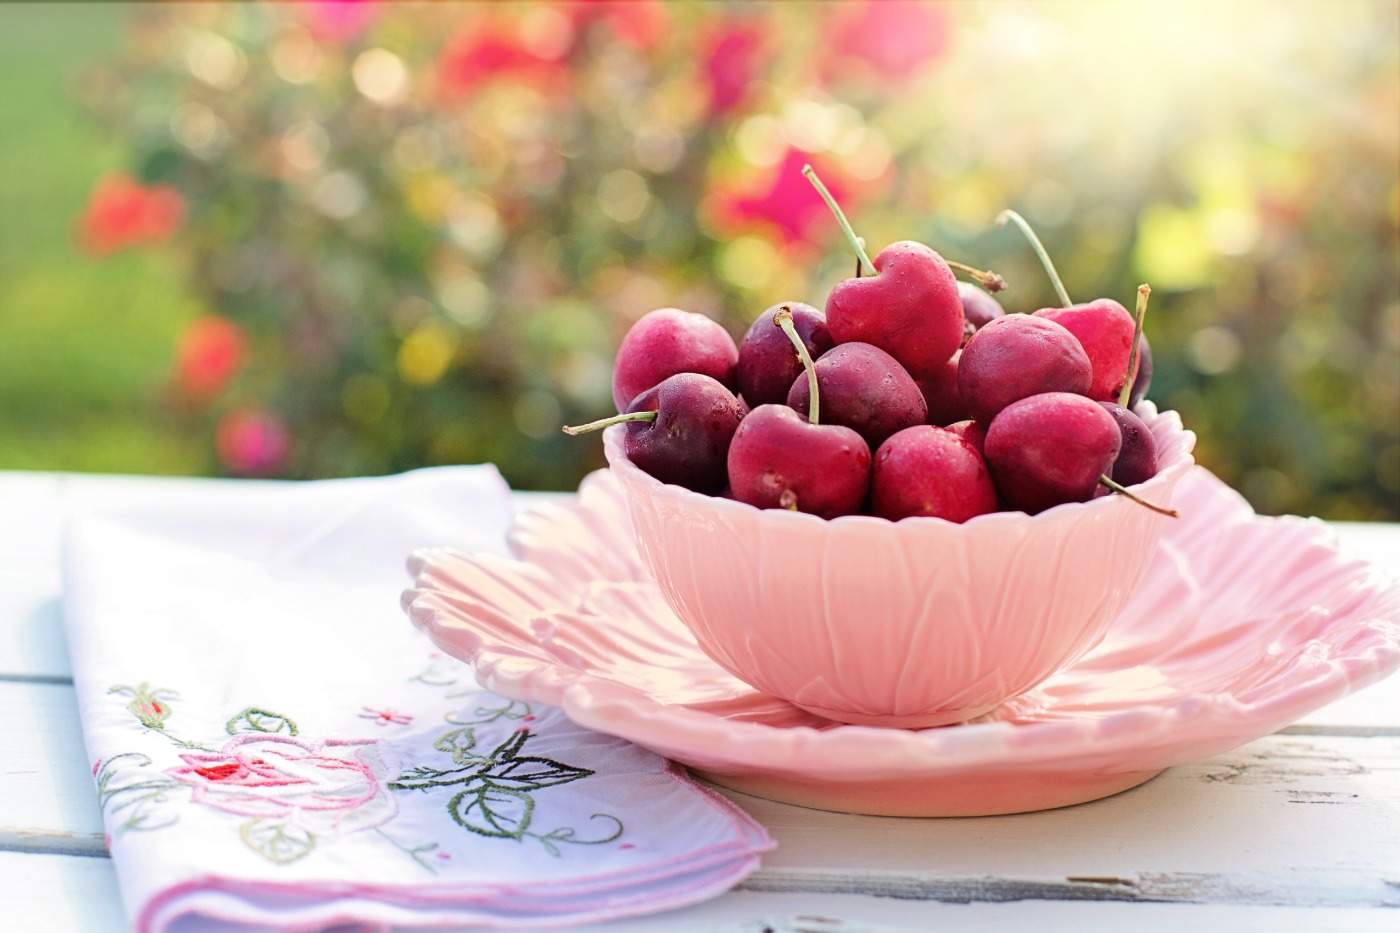 frische kirschen in rosafarbener schüssel auf einem tisch am warmen tag